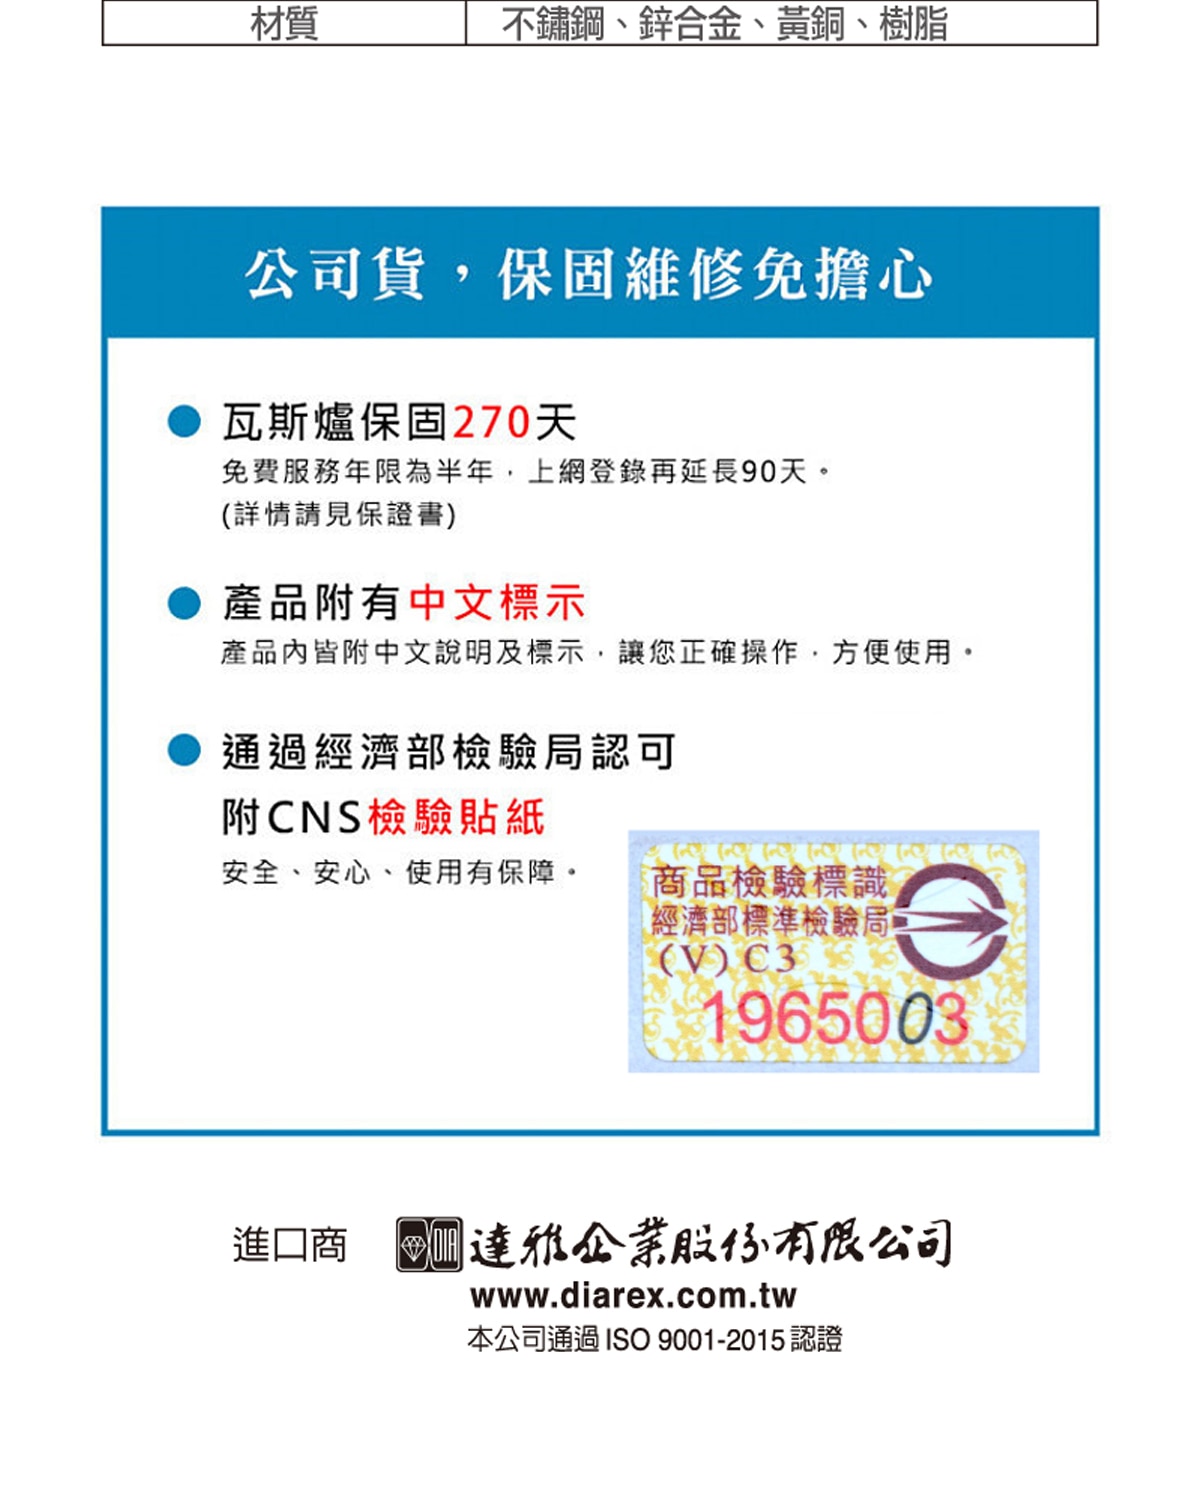 SOTO輕型登山爐含有瓦斯爐保固270天,產品皆附有中文標示,並通過經濟部檢驗局認可附有CNS檢驗貼紙。